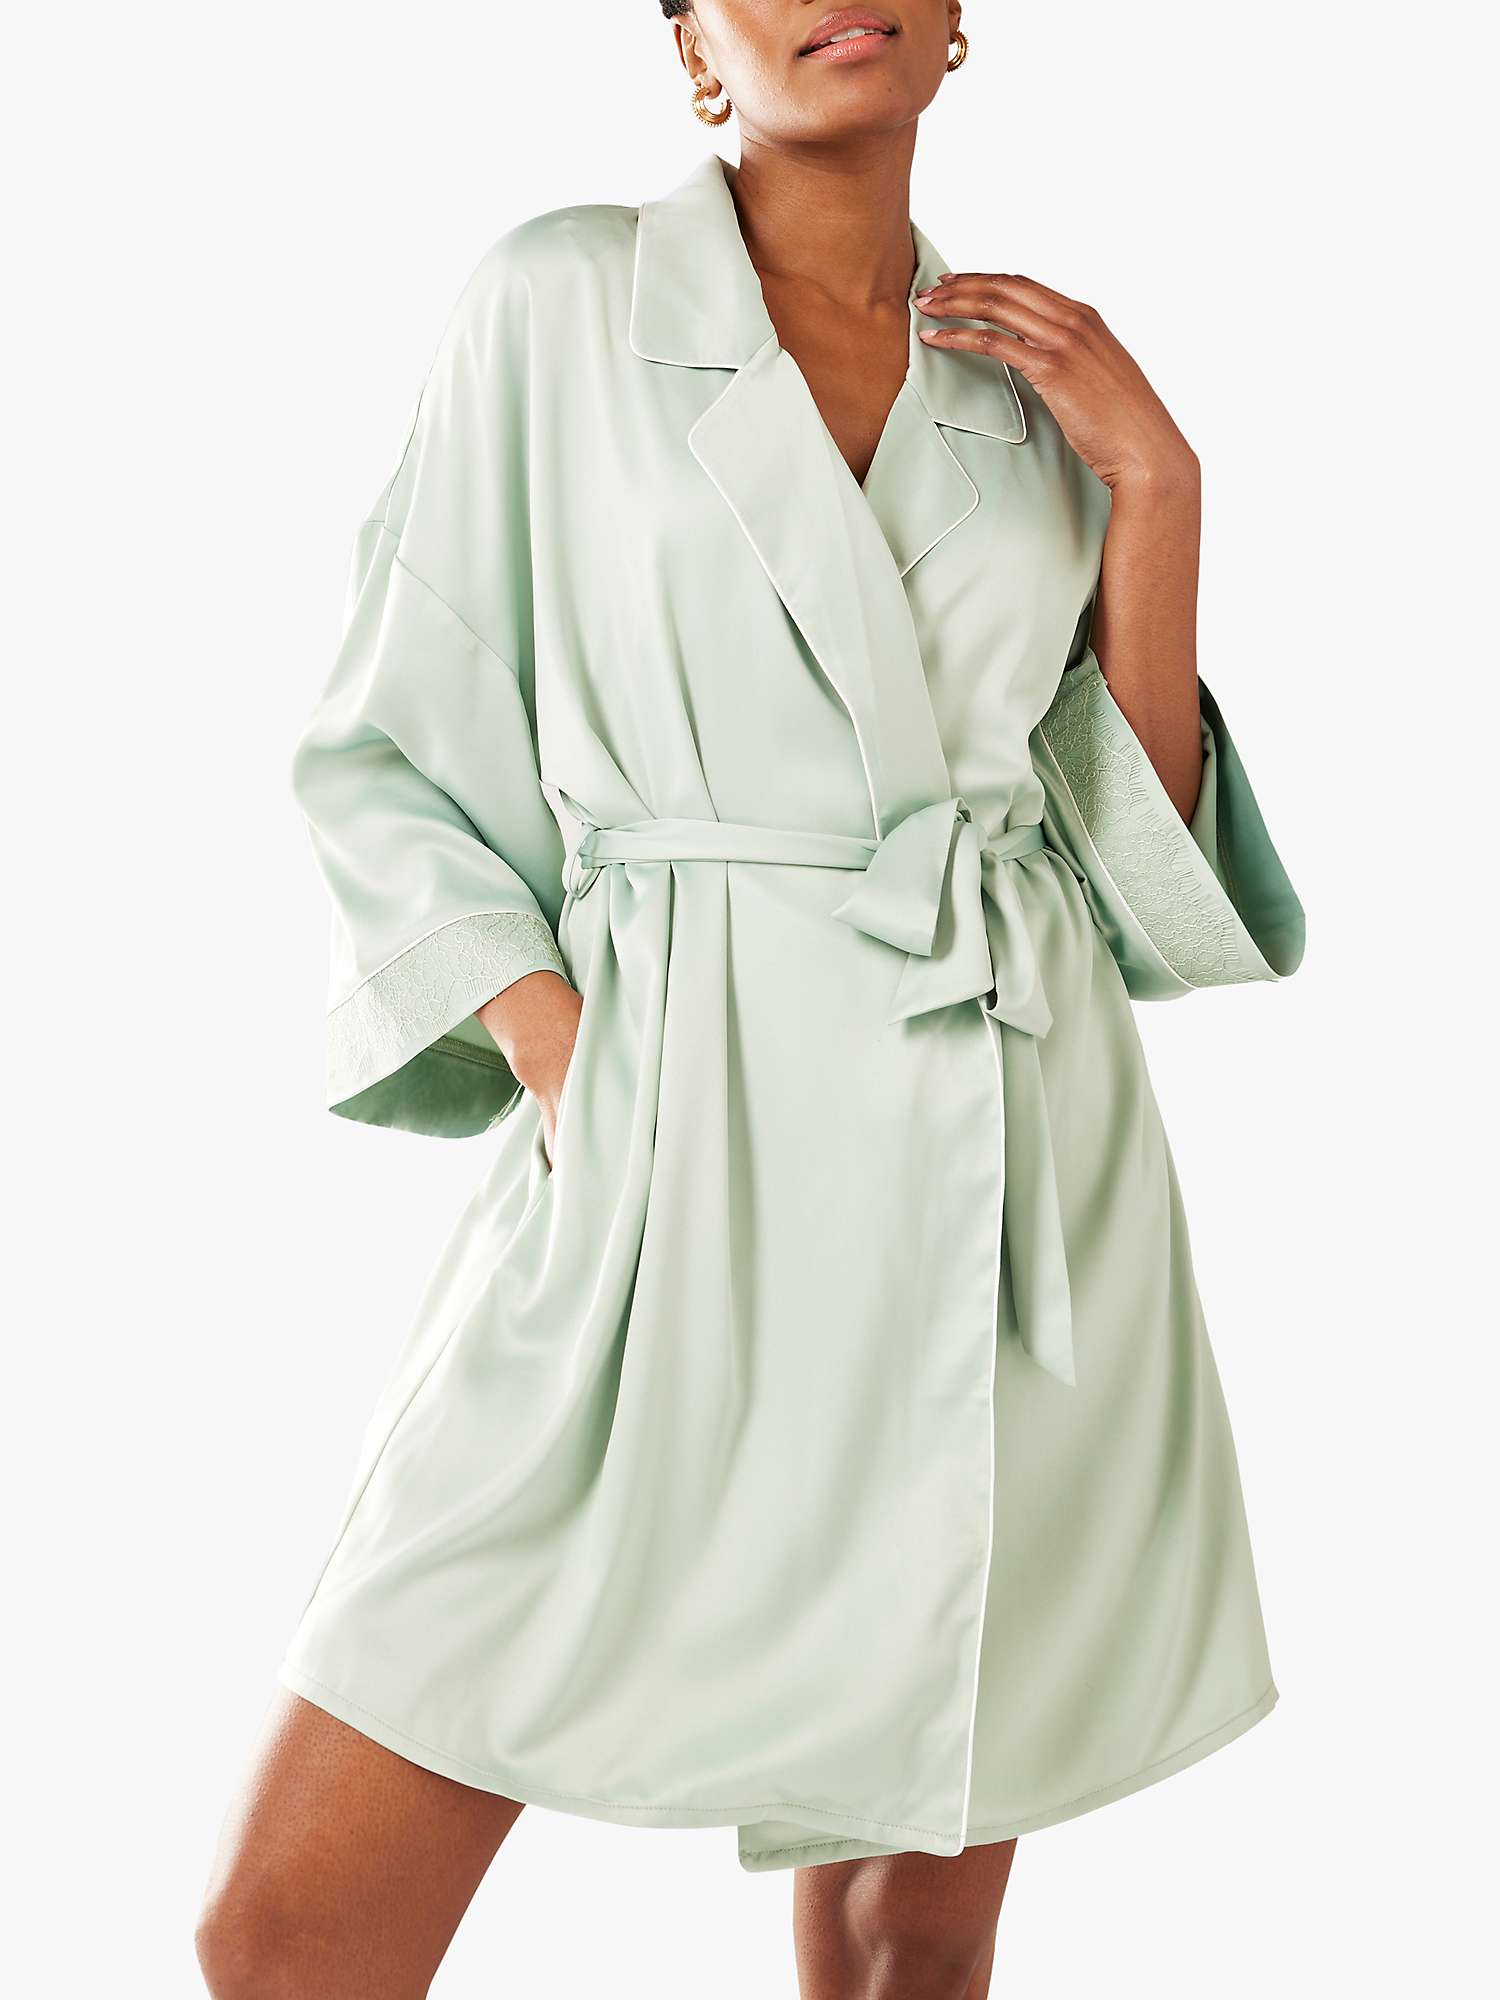 Buy Chelsea Peers Satin Dressing Gown Online at johnlewis.com